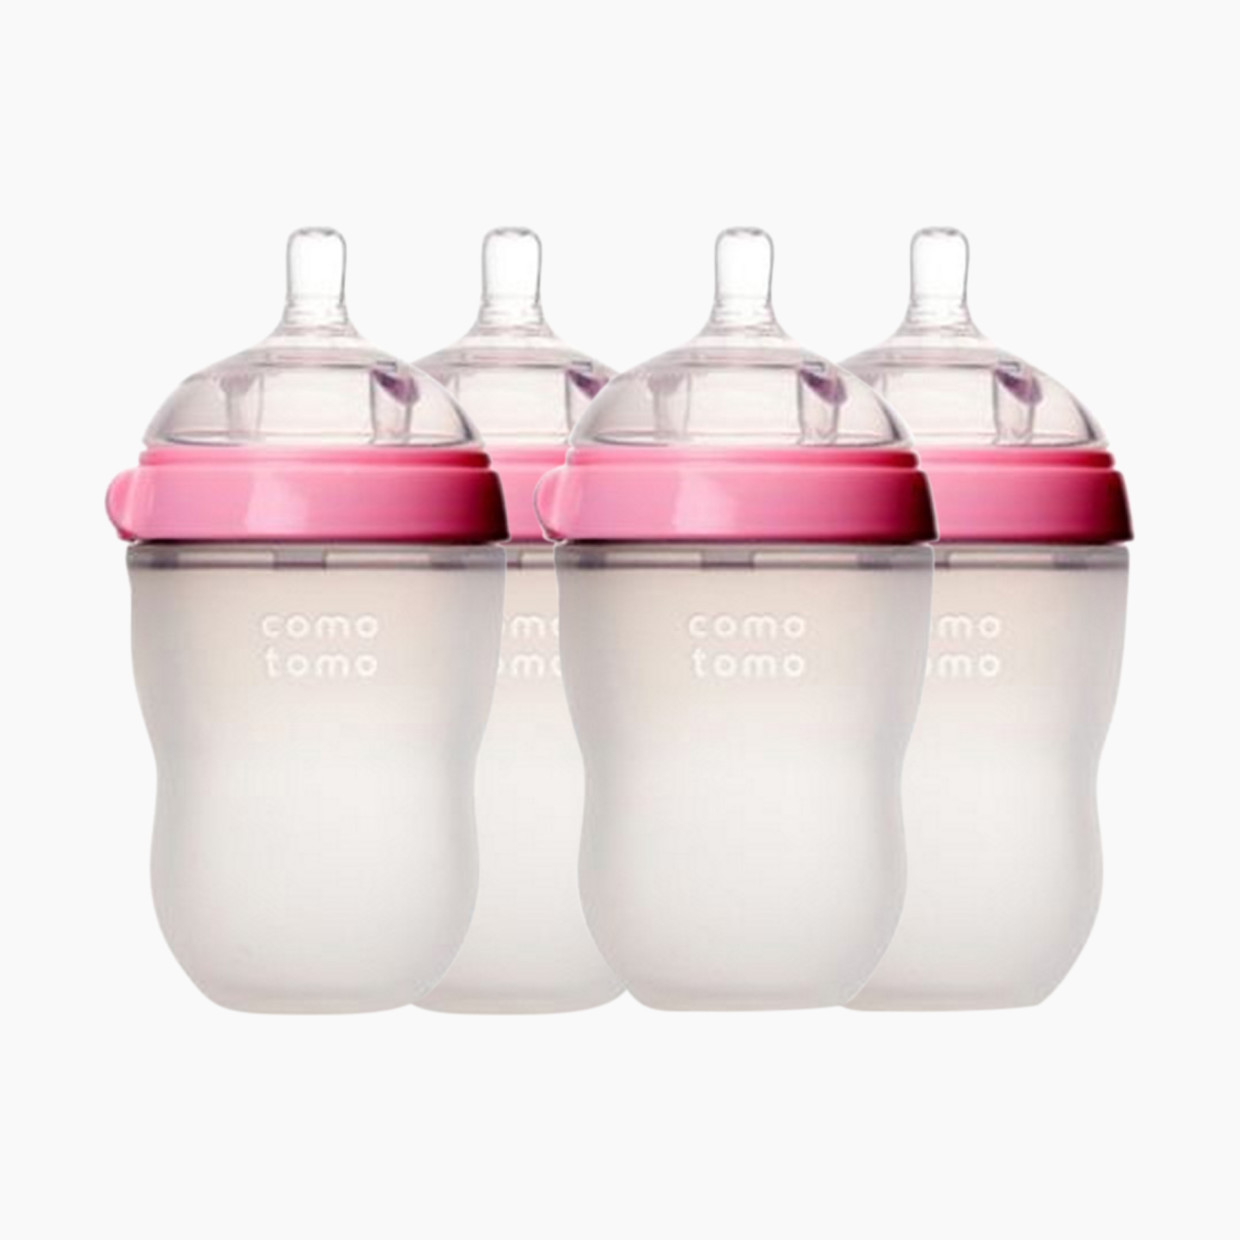 Comotomo Natural Feel Silicone Baby Bottles - Pink, 8 Oz, 4.